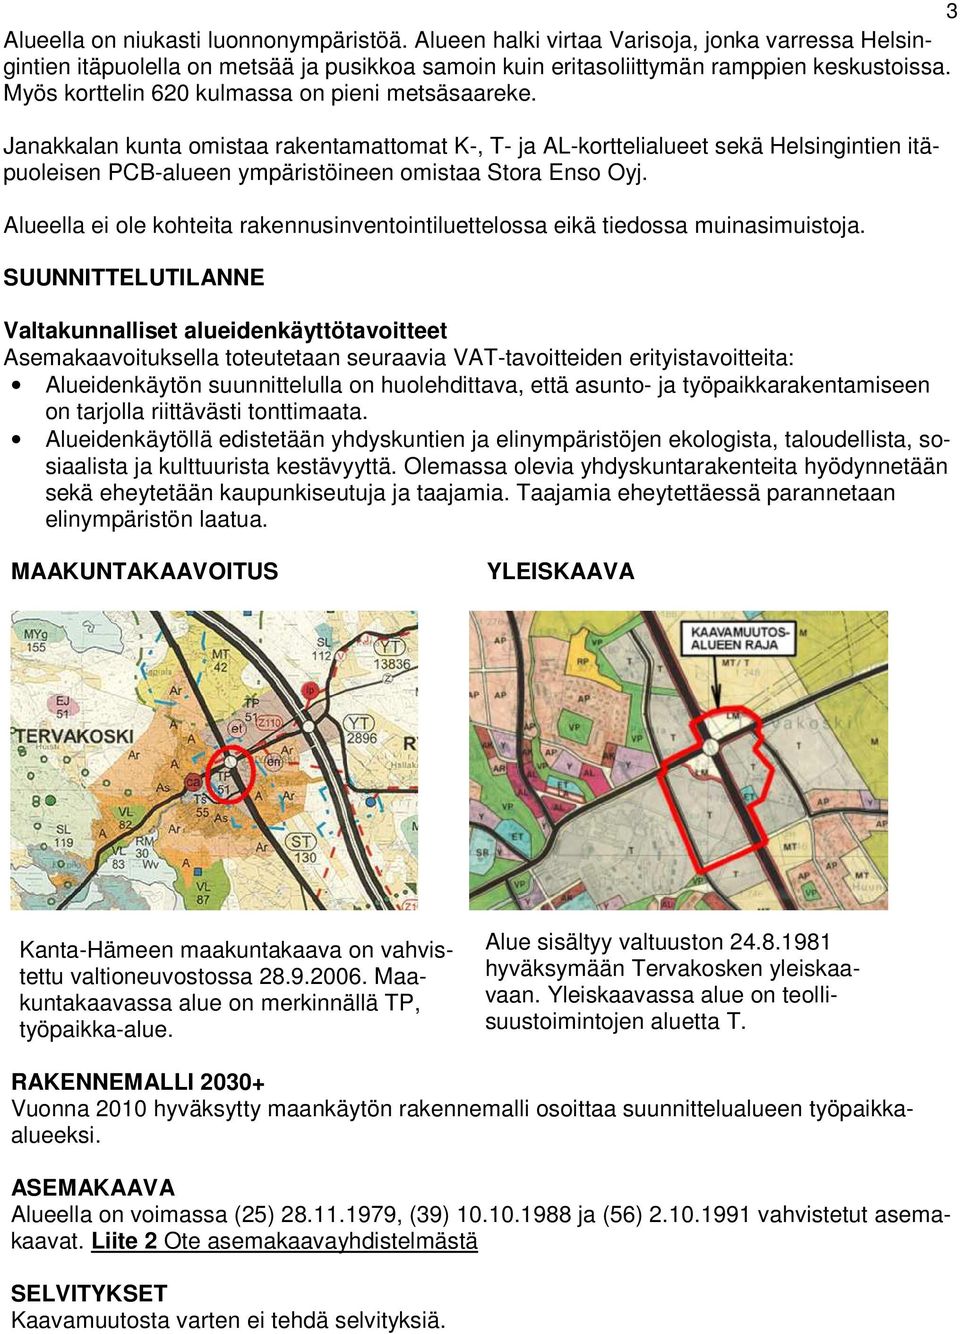 Janakkalan kunta omistaa rakentamattomat K-, T- ja AL-korttelialueet sekä Helsingintien itäpuoleisen PCB-alueen ympäristöineen omistaa Stora Enso Oyj.